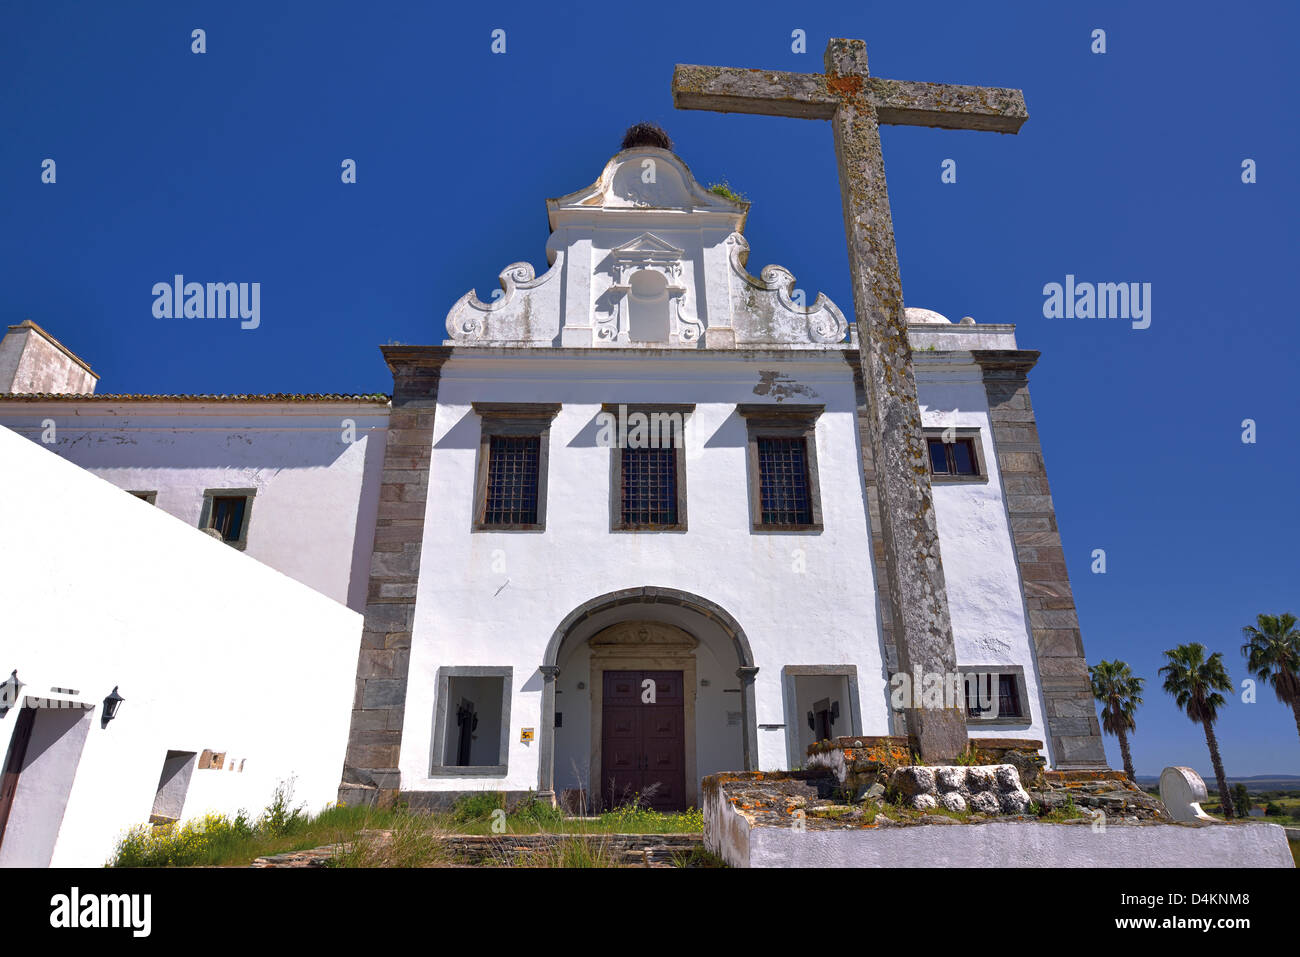 Portugal, Alentejo: Main facade of former monastery Convento da Orada in Monsaraz Stock Photo